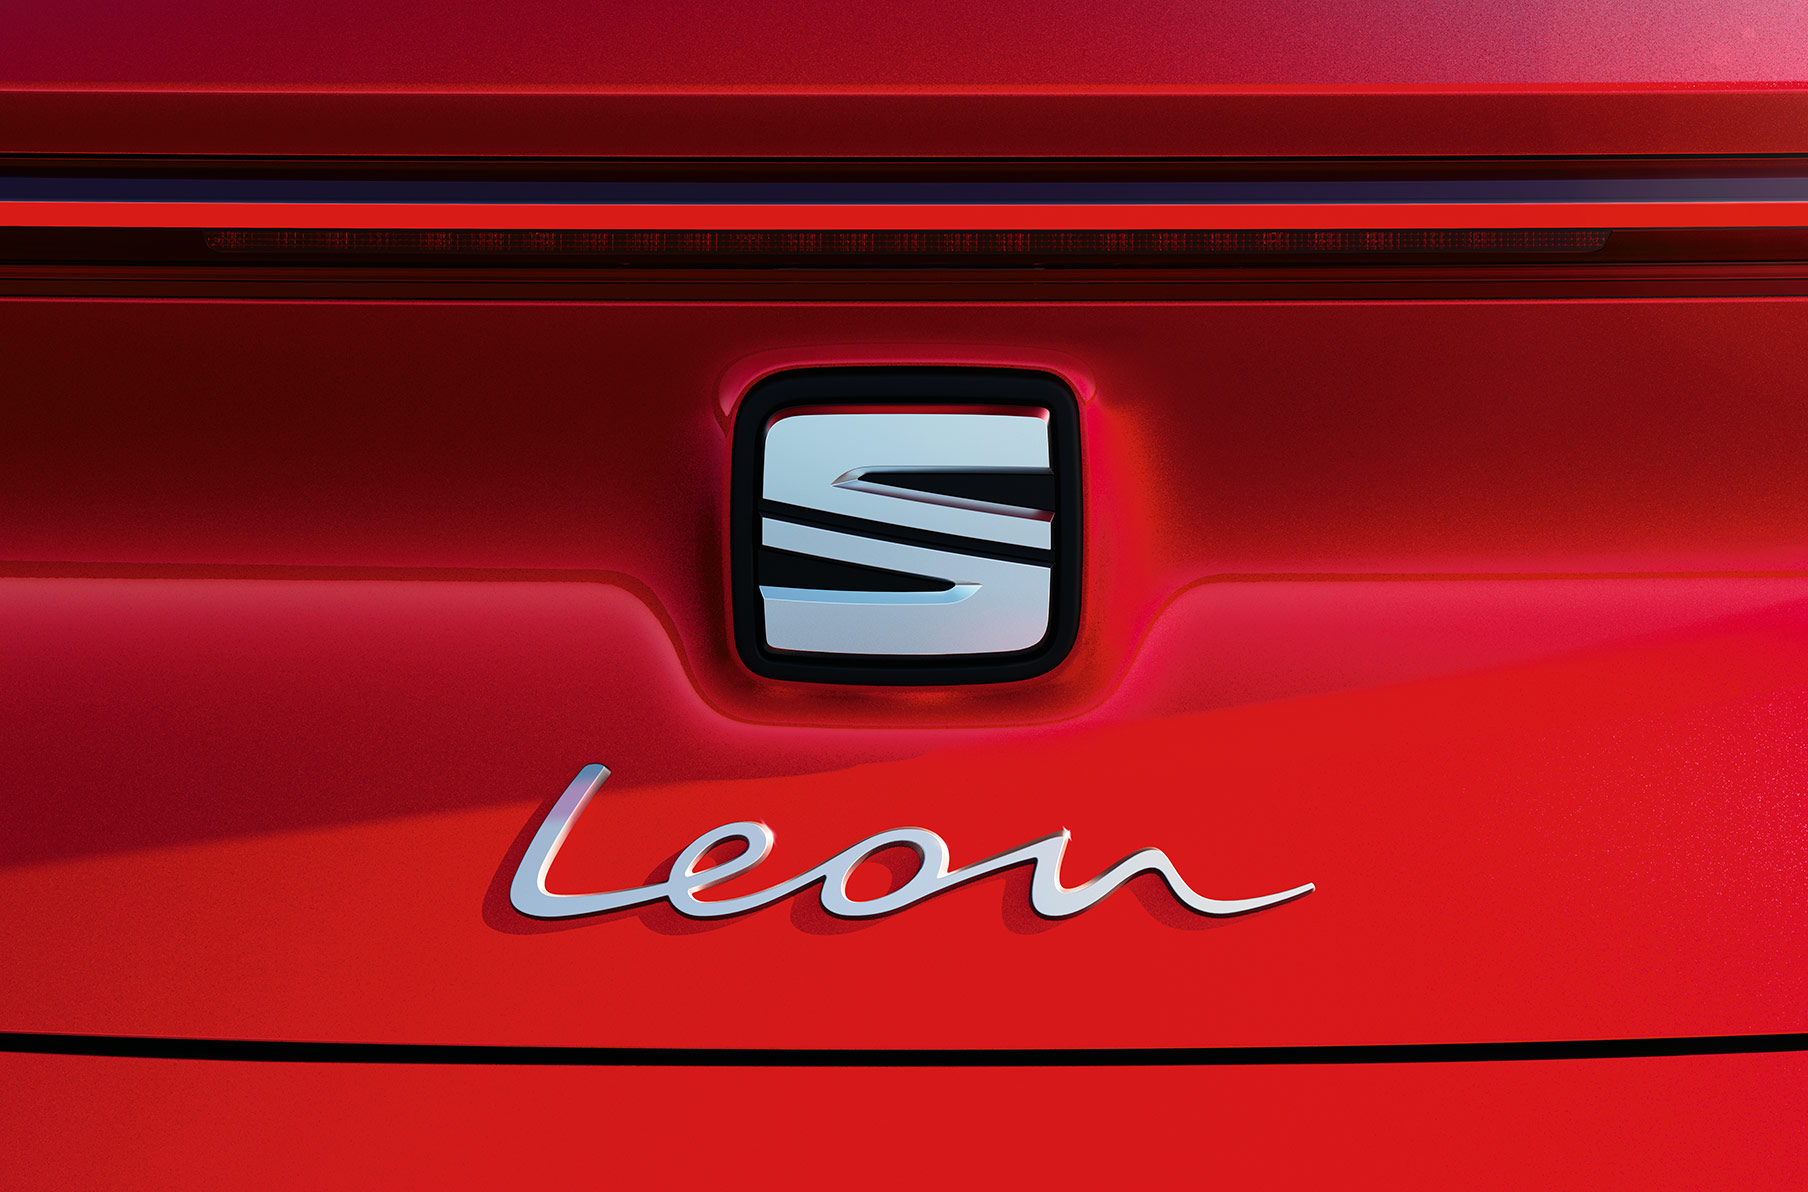 SEAT León color rojo Pure con León manuscrito